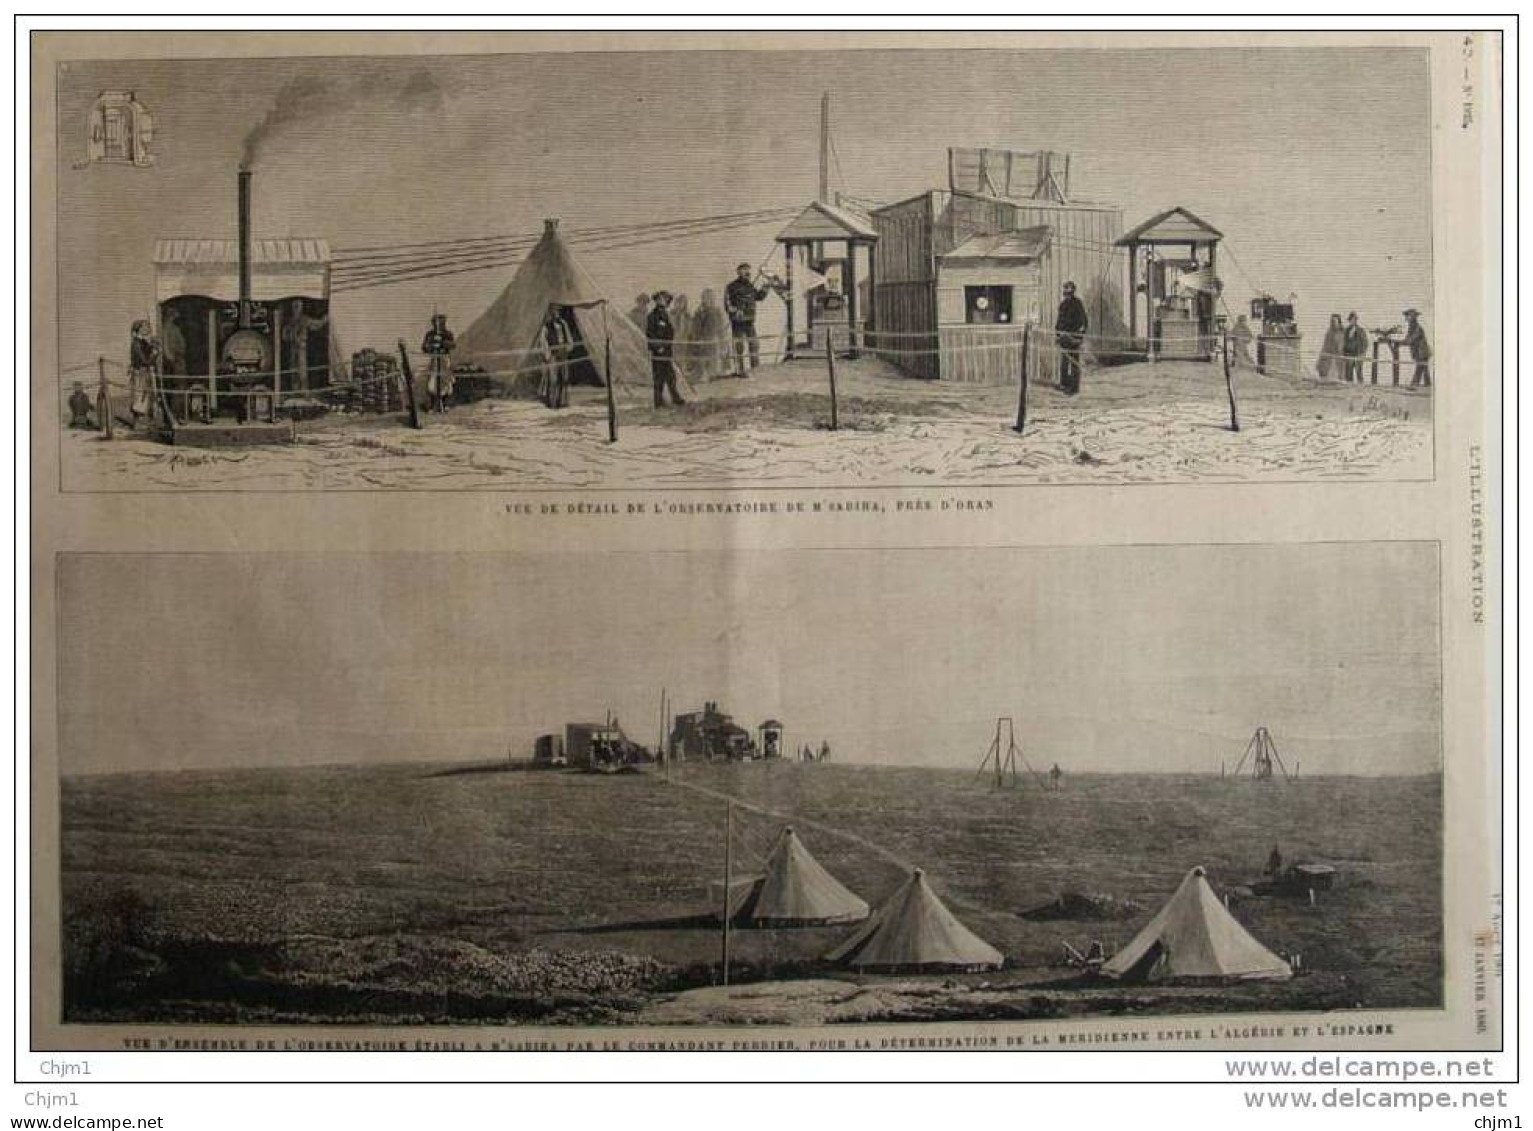 Observatoire De M&acute;Sabiha Près D&acute;Oran - Page Original - 1880 - Historische Dokumente